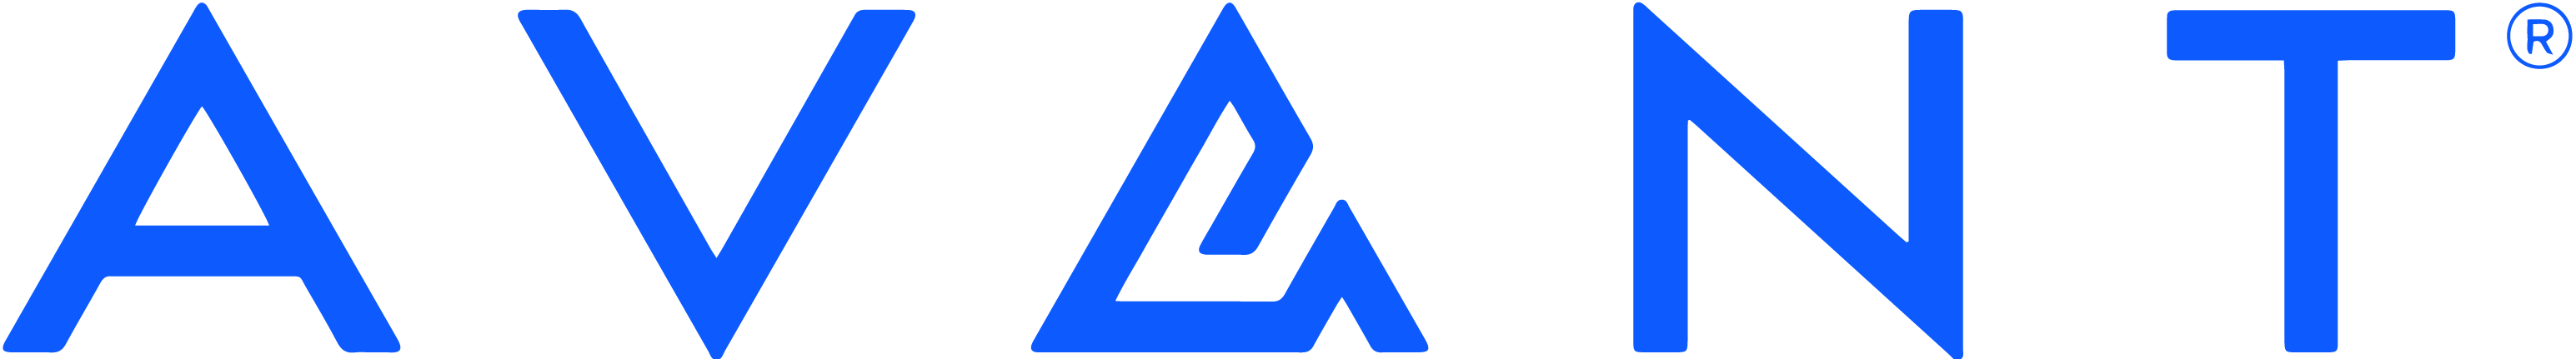 avant-logo-slate-blue